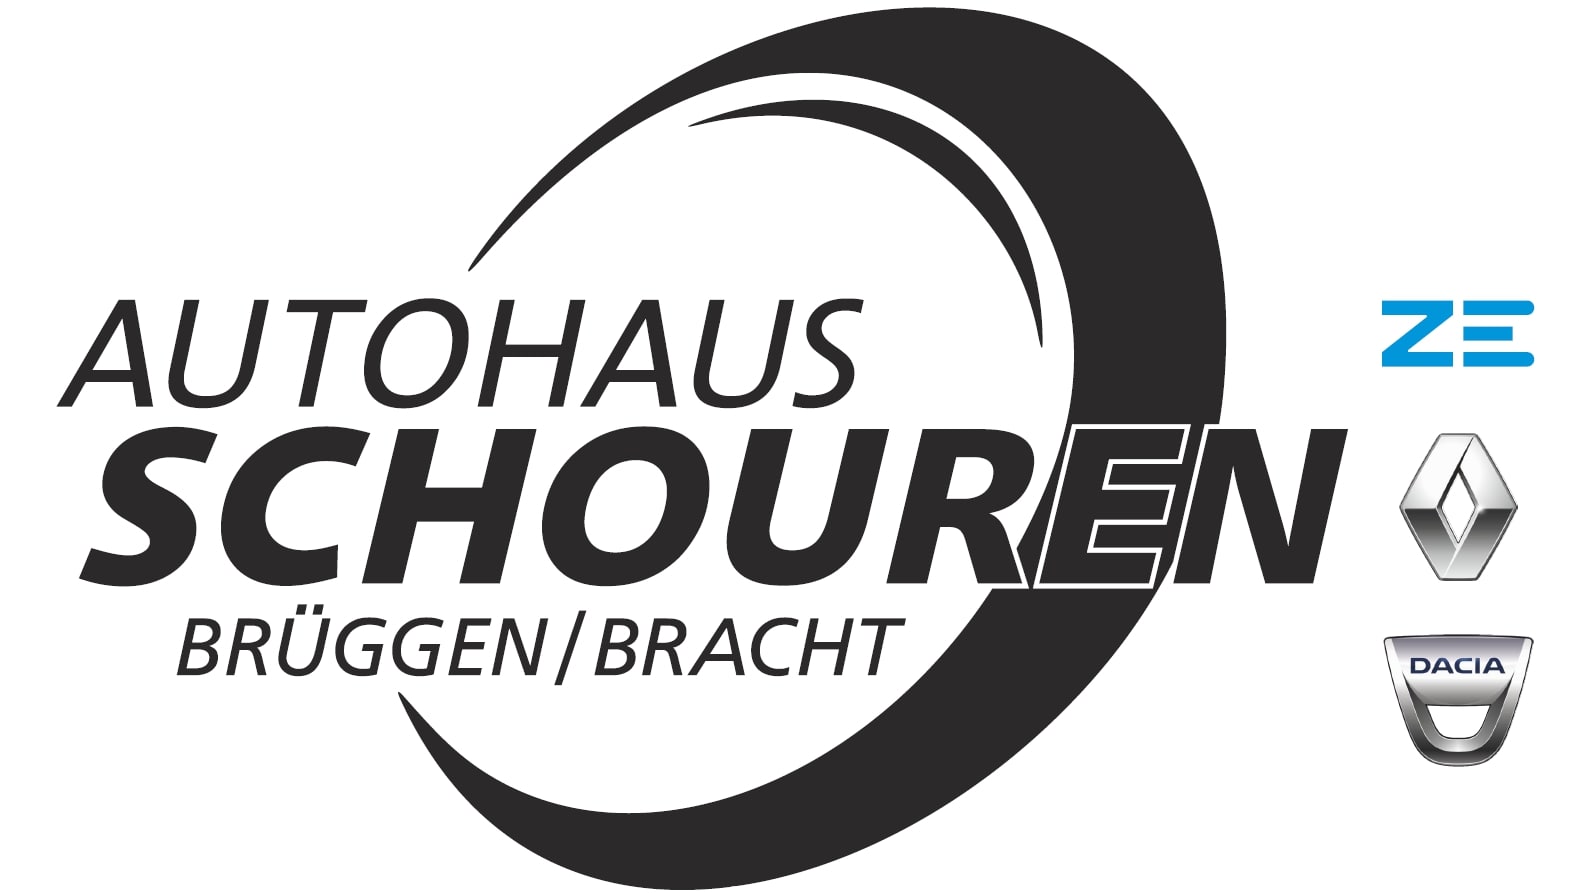 Bild 4 Autohaus Schouren in Brüggen